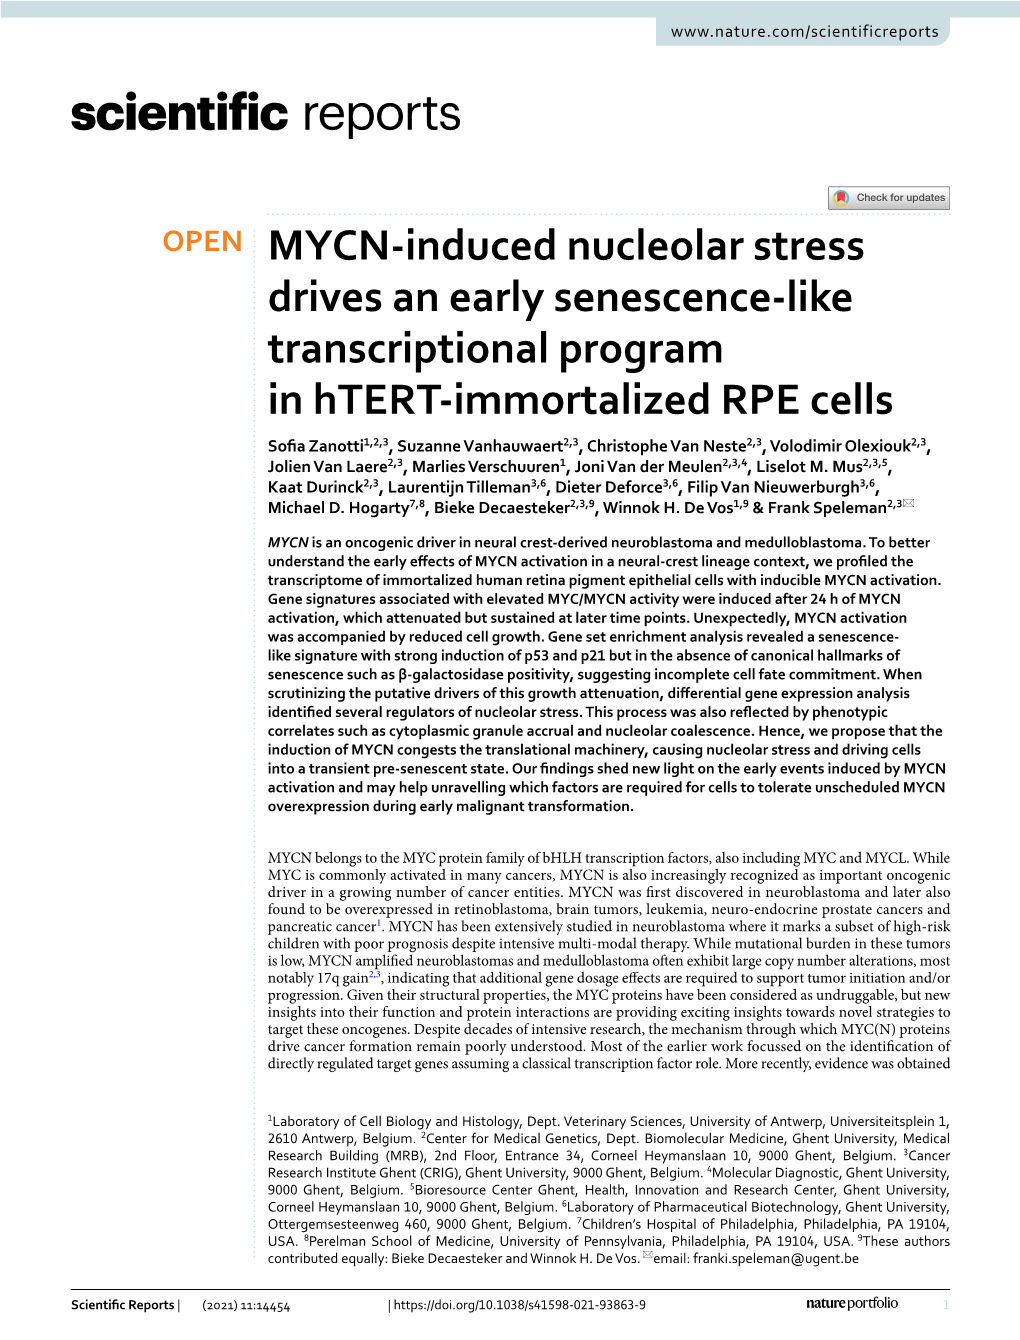 MYCN-Induced Nucleolar Stress Drives an Early Senescence-Like